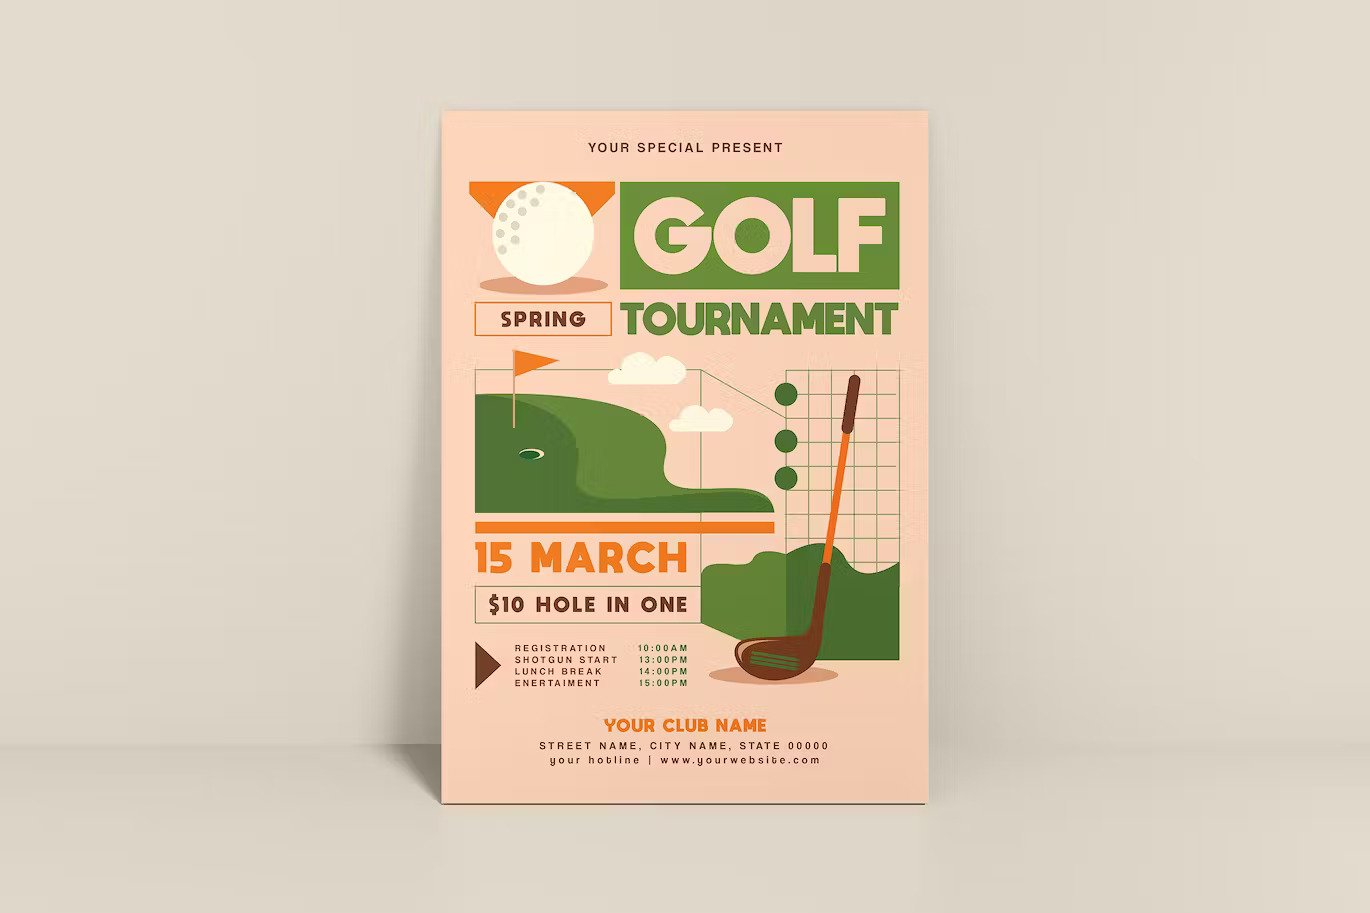 A retro golf tournament flyer